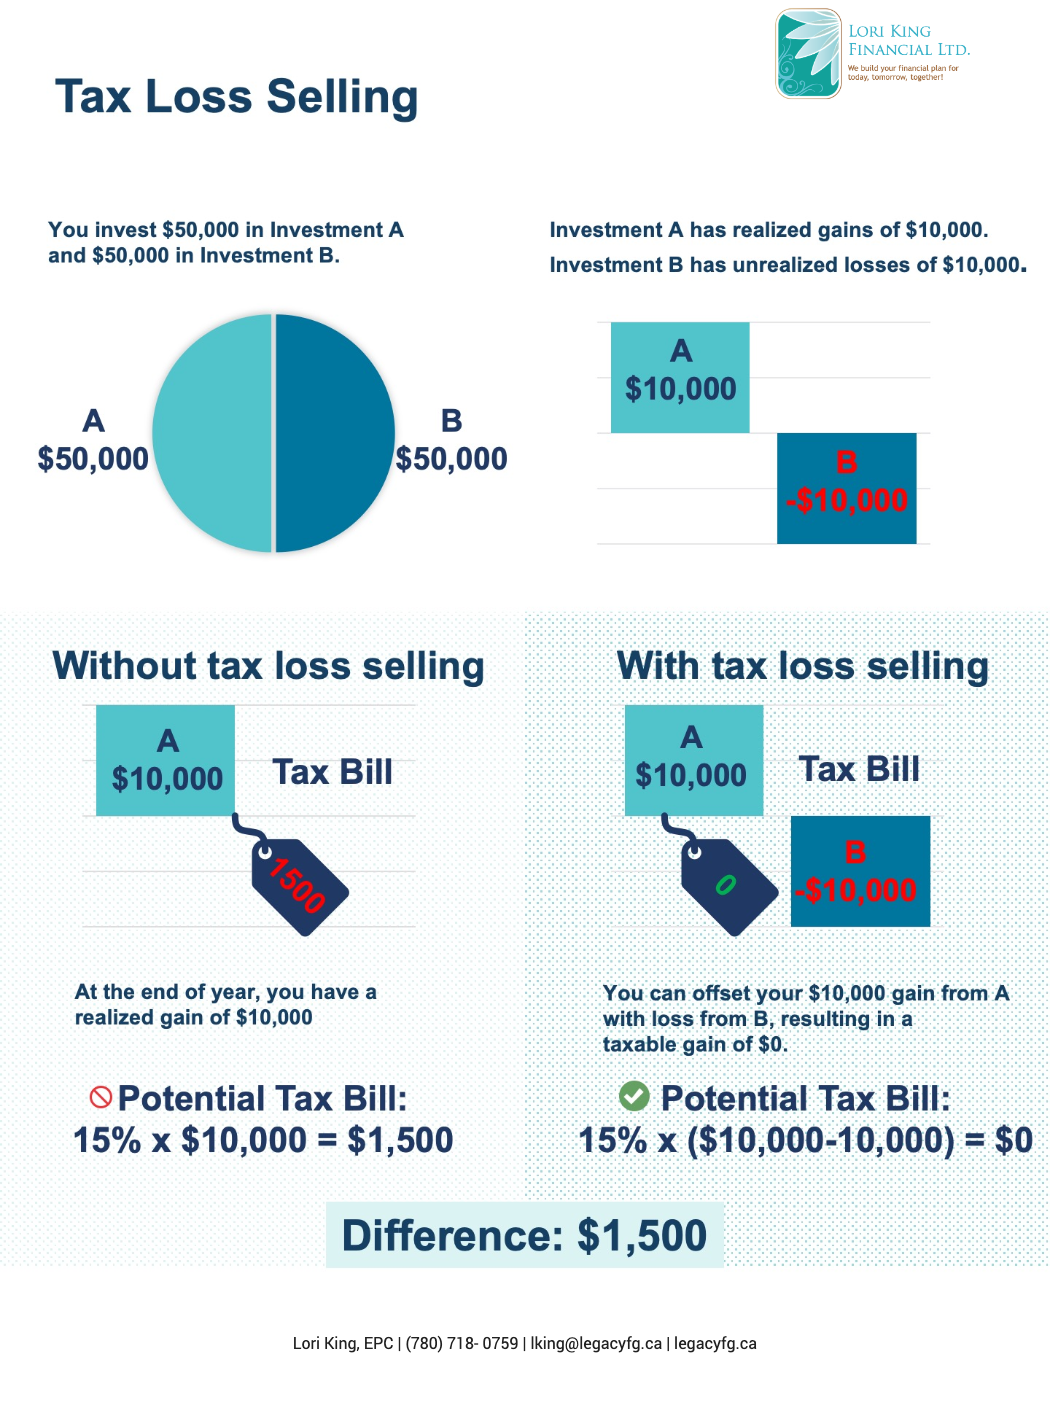 Tax Loss Selling Lori King Financial Ltd.